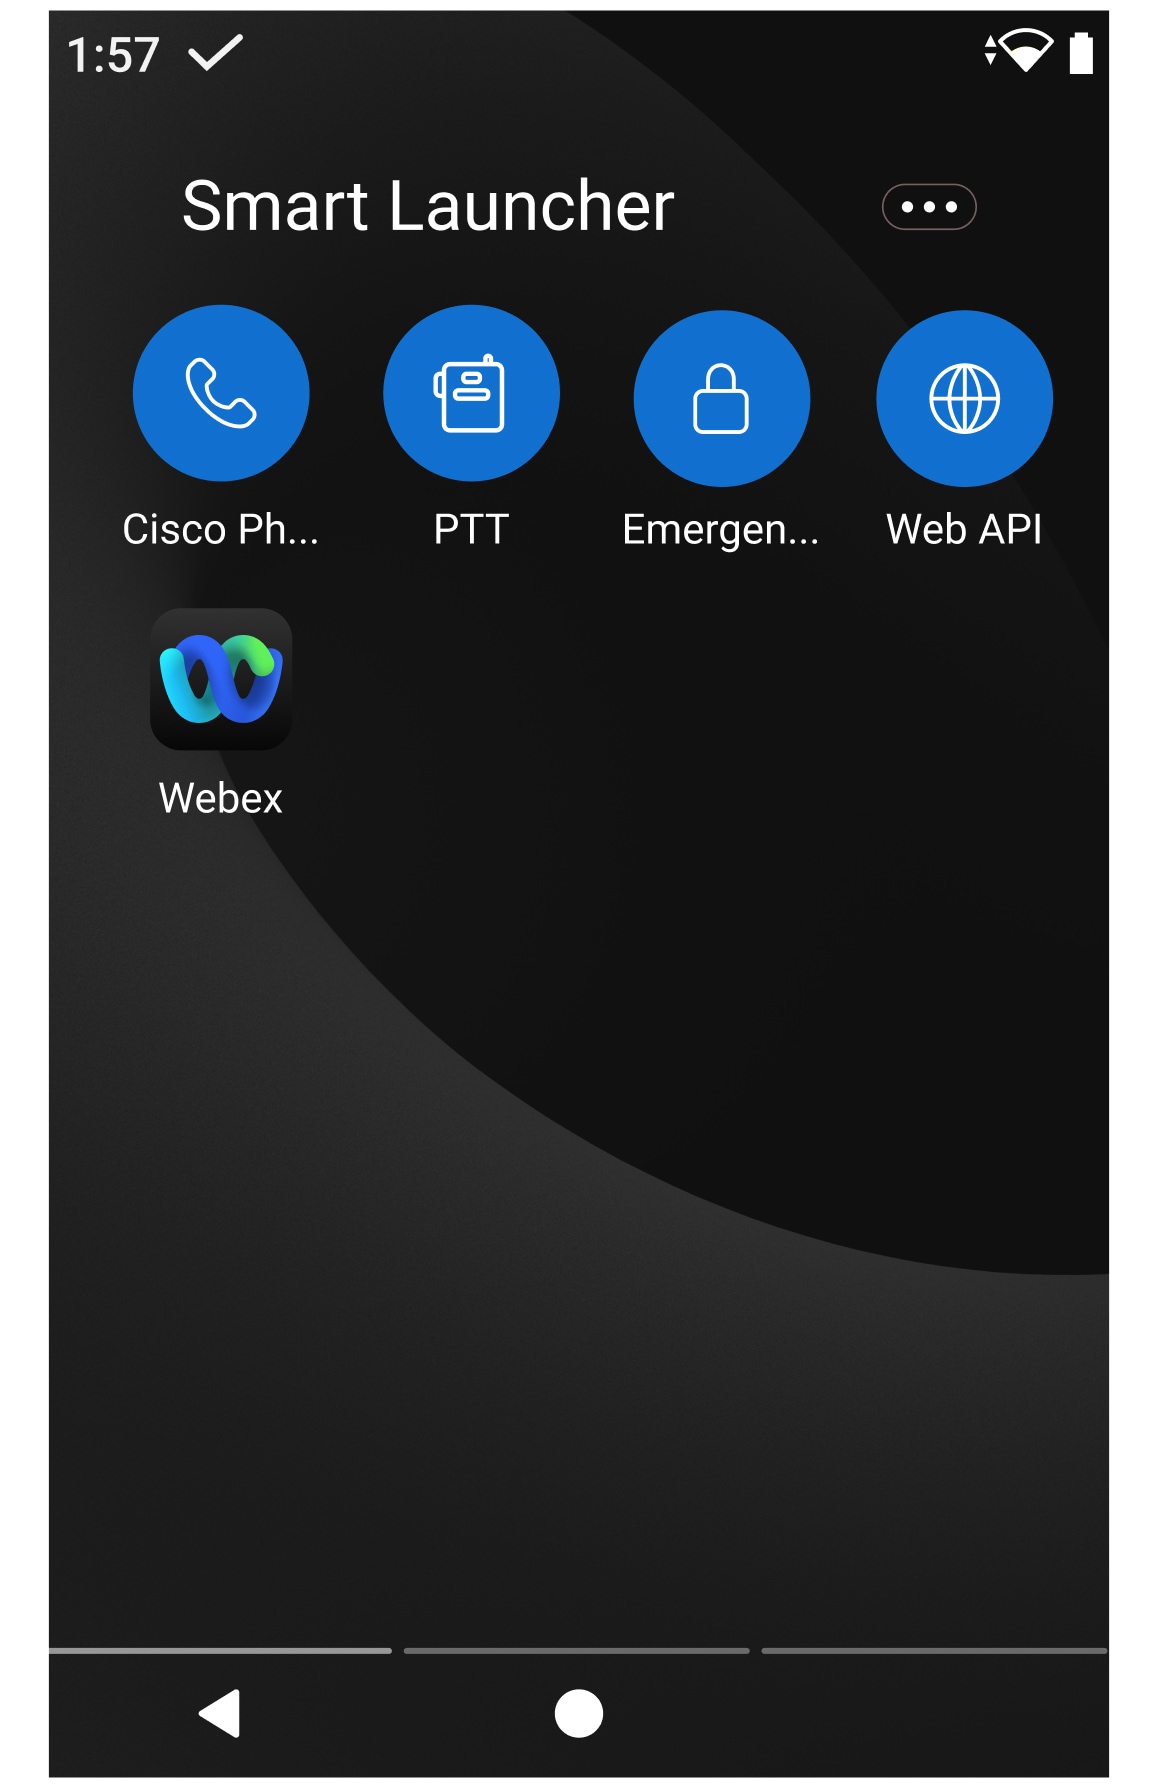 Fond sombre sur l'écran d'accueil du téléphone avec : une étroite barre d'icônes d'état en haut. Au milieu de l'écran se trouve l'étiquette Smart Launcher, suivie d'un menu de débordement et d'icônes pour cinq applications : Téléphone Cisco, PTT, Emergency, API Web et Webex. Au bas de l'écran, se trouvent les icônes de navigation Retour et Accueil.